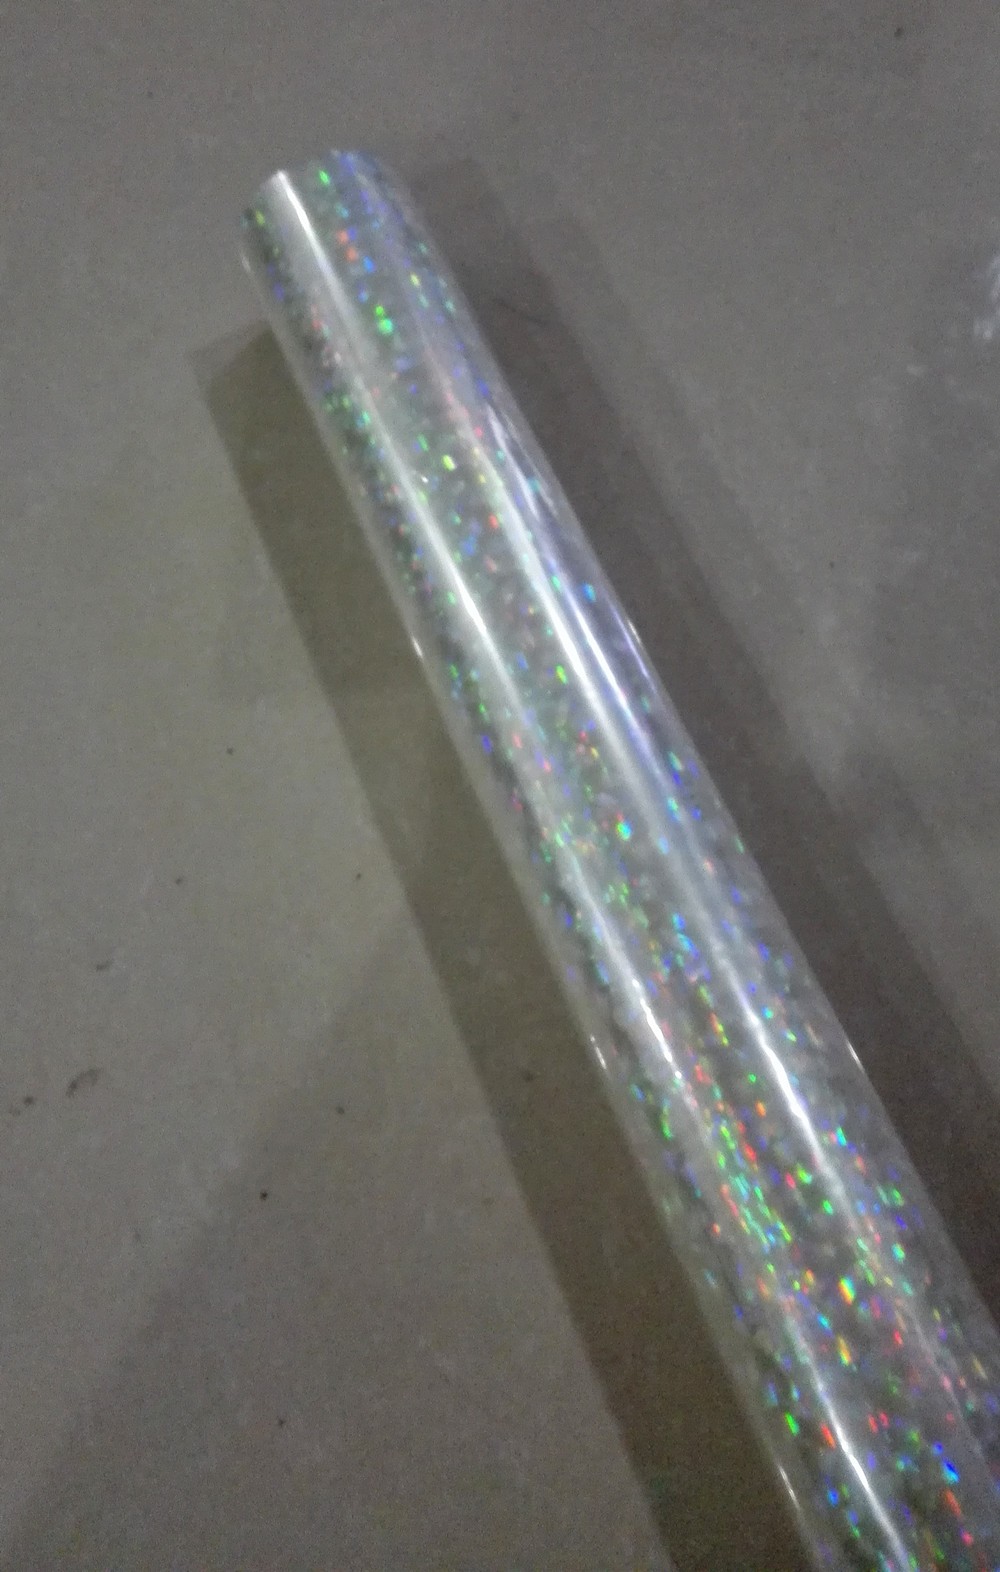 Holographic foil transparent foil broken glass hot stamping foil press on paper or plastic